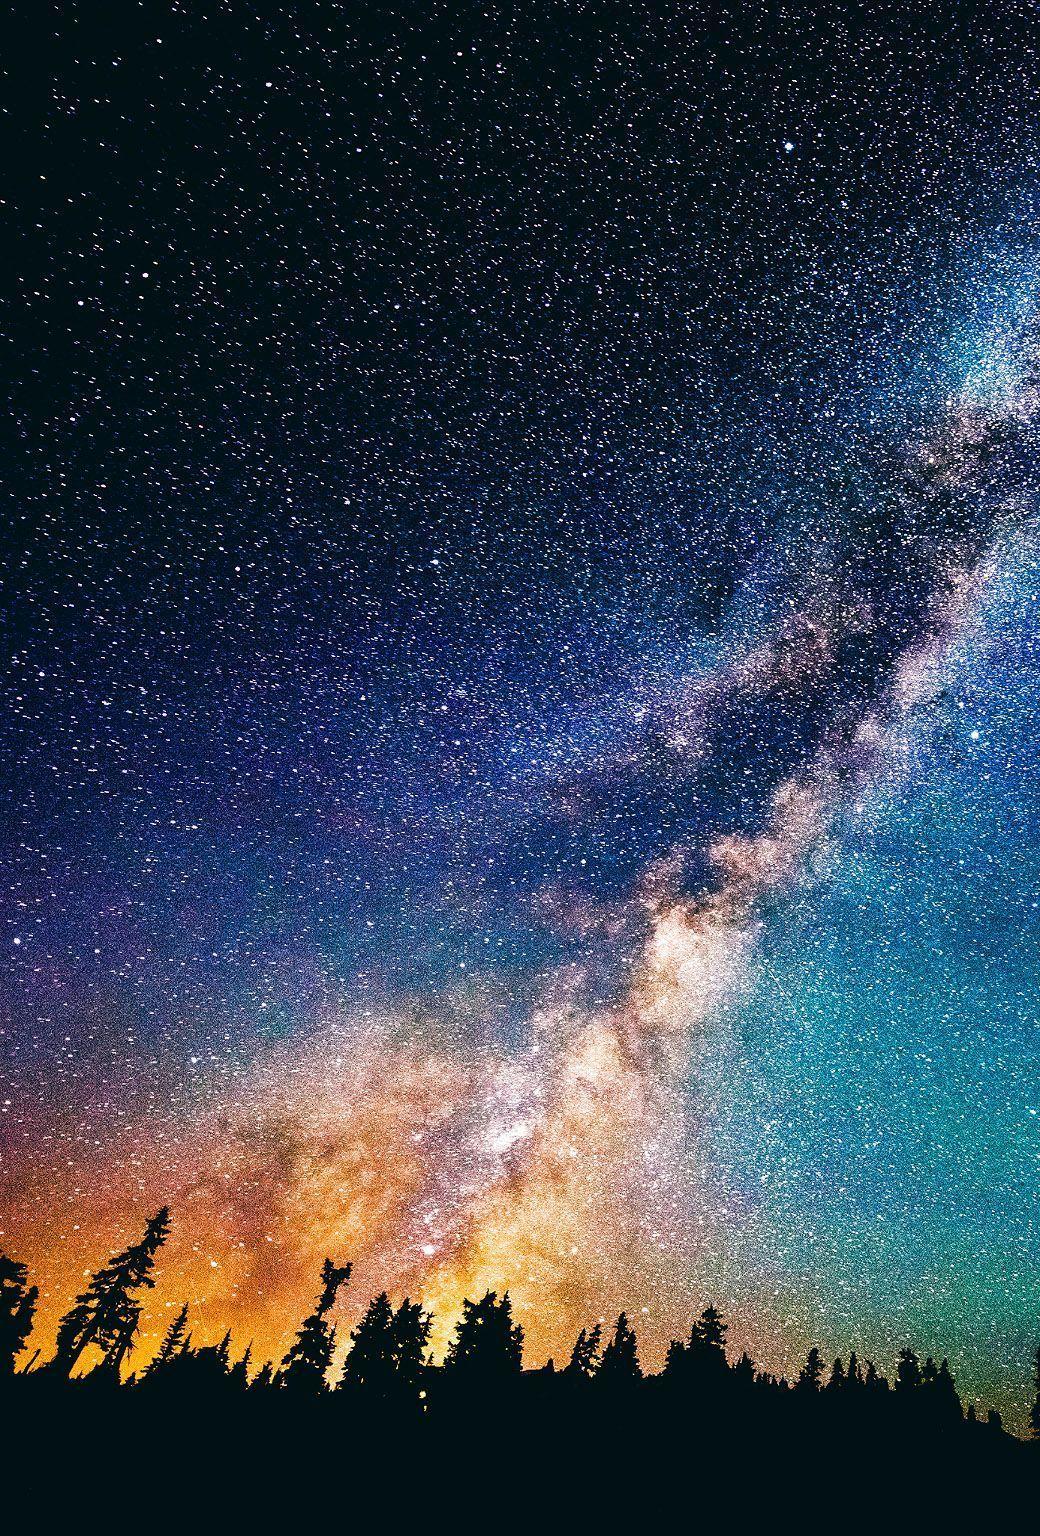 Wallpaper Of Night Sky